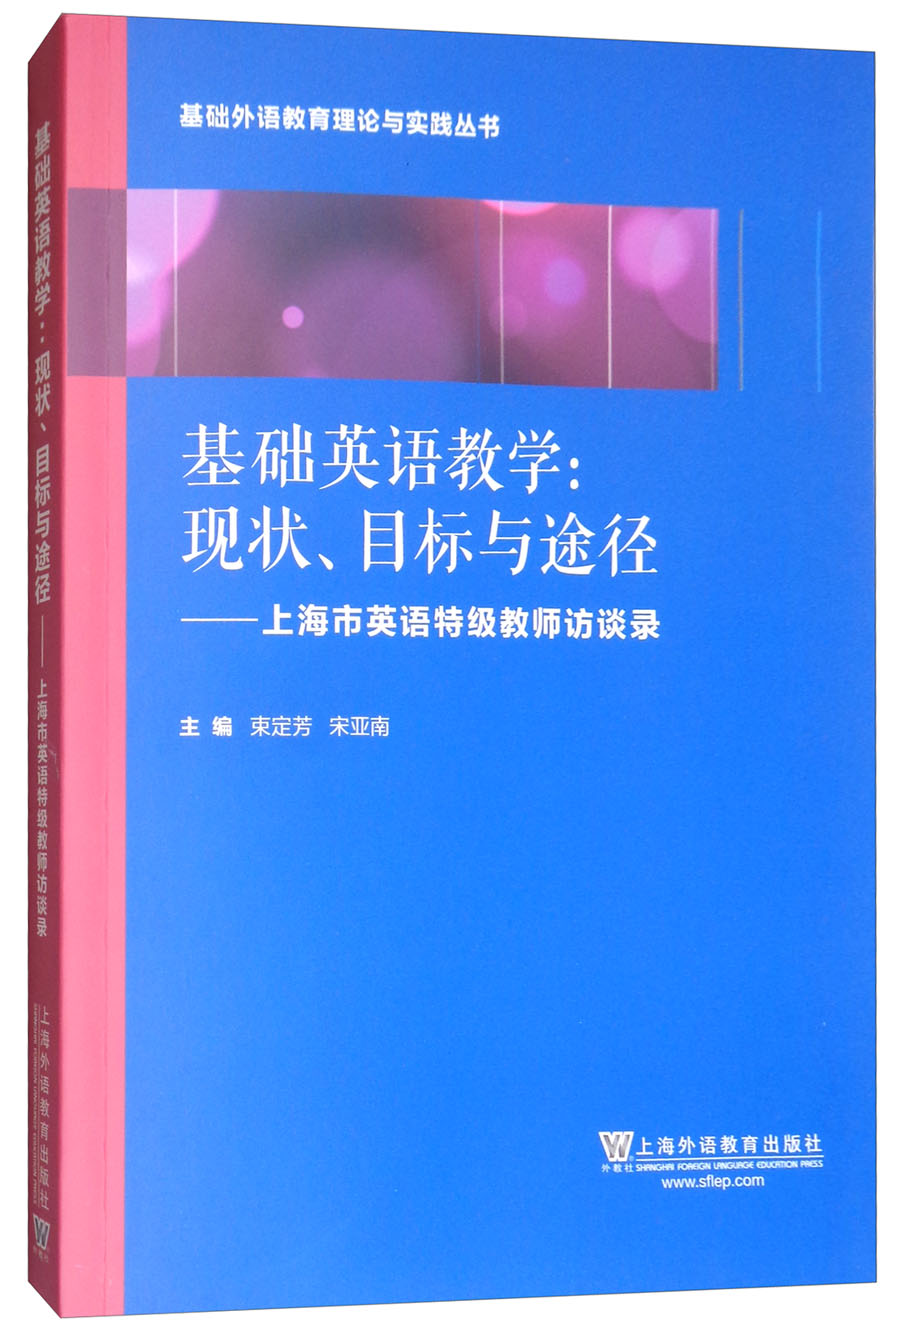 基础外语教育理论与实践丛书·基础英语教学·现状、目标与途径：上海英语特级教师访谈录